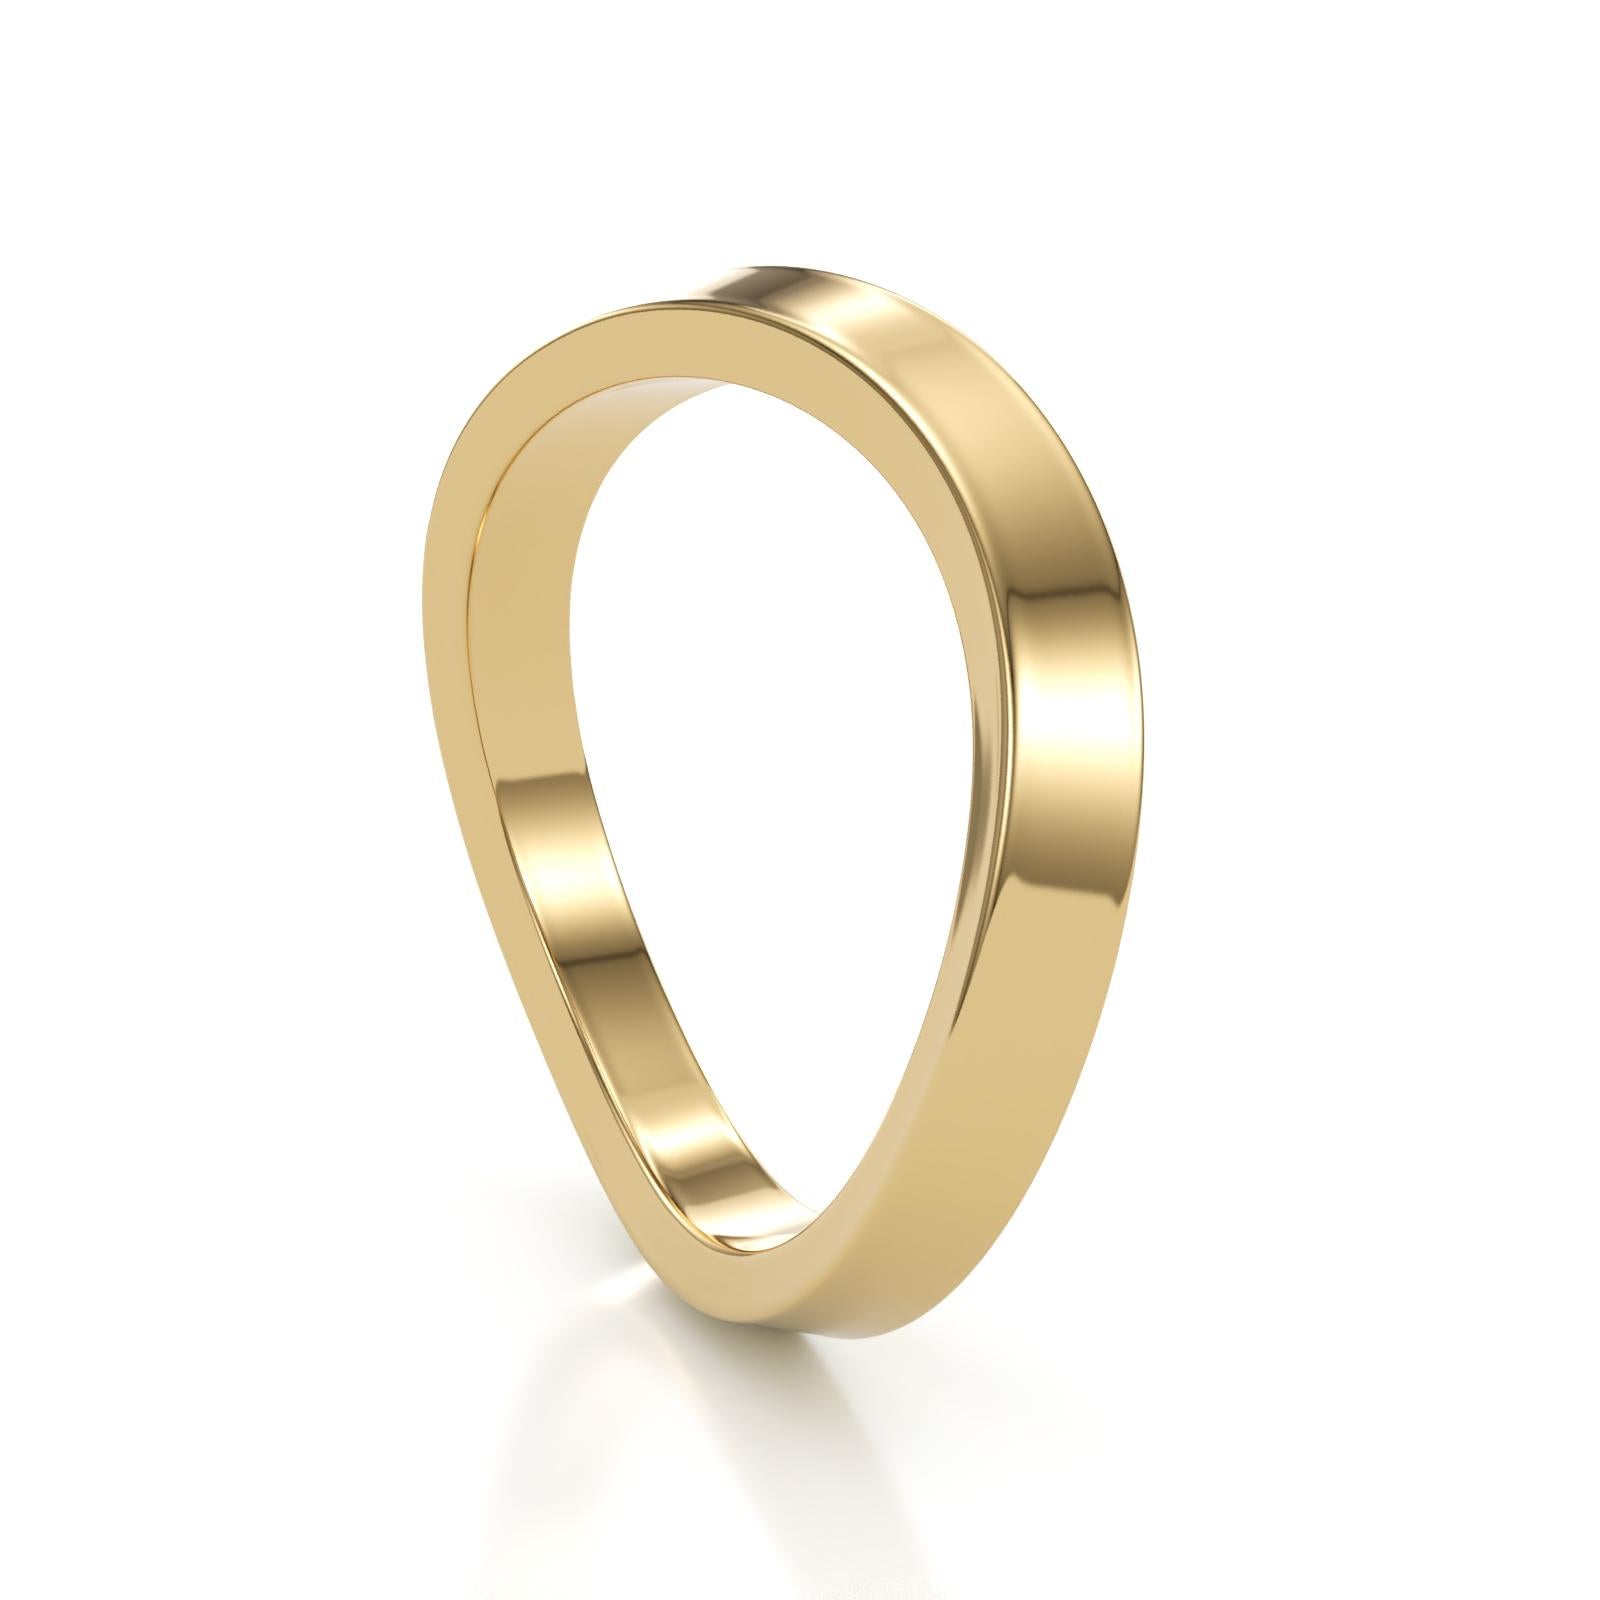 Mit diesem atemberaubenden Ring aus Gelbgold, der sich perfekt mit unserem Sierra Ring und mit sich selbst kombinieren lässt, können Sie Ihren Schmuck aufwerten. Dieser in NYC handgefertigte Ring hat eine sanft geschwungene Form entlang des Bandes